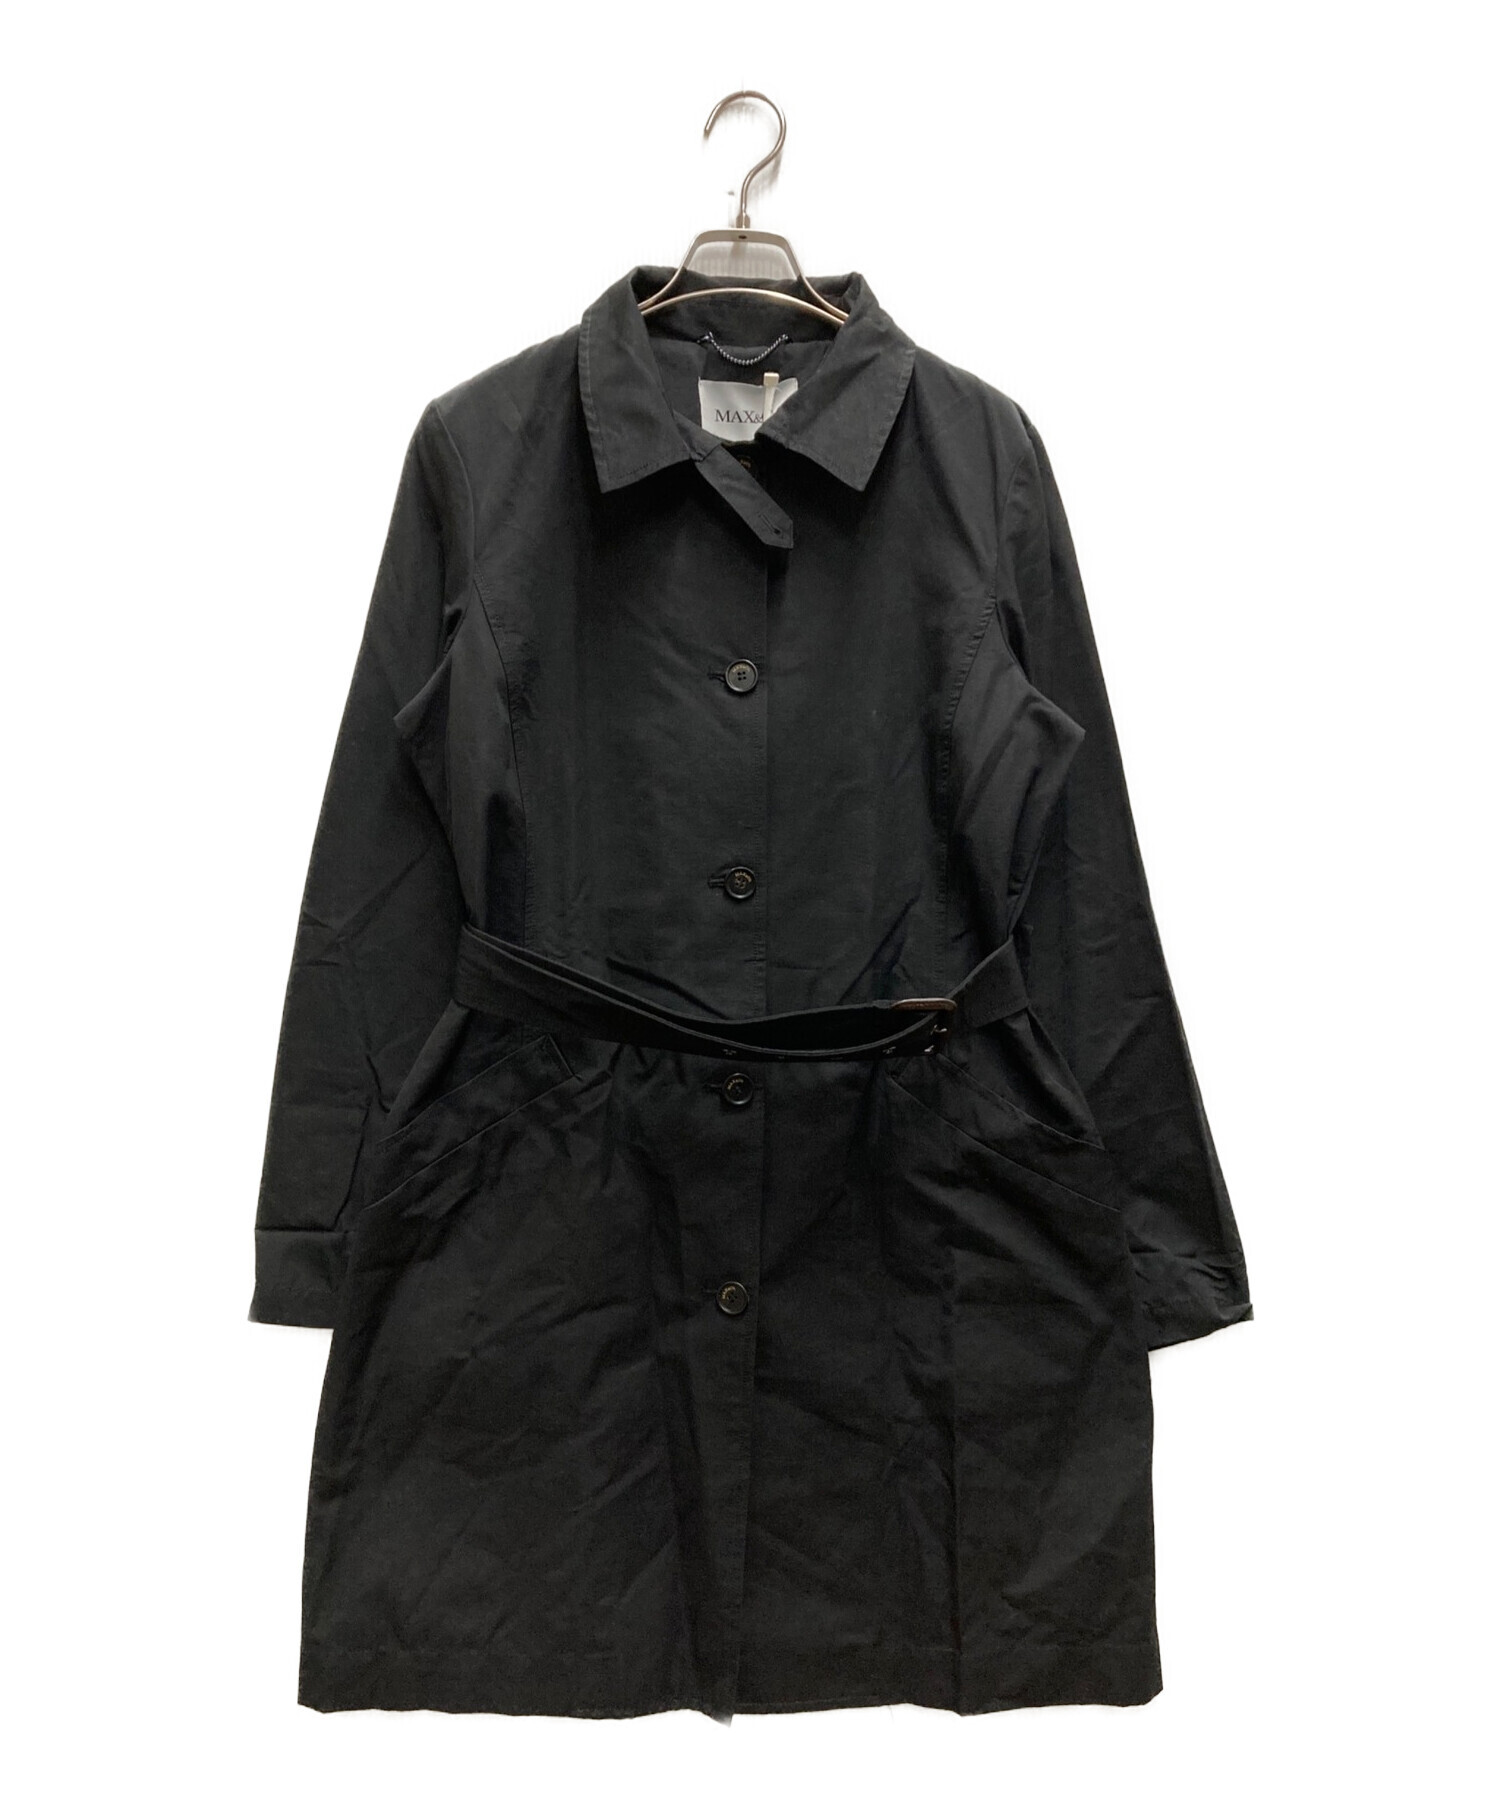 ブラック コート Max&Co. マックス&コー - ロングコート